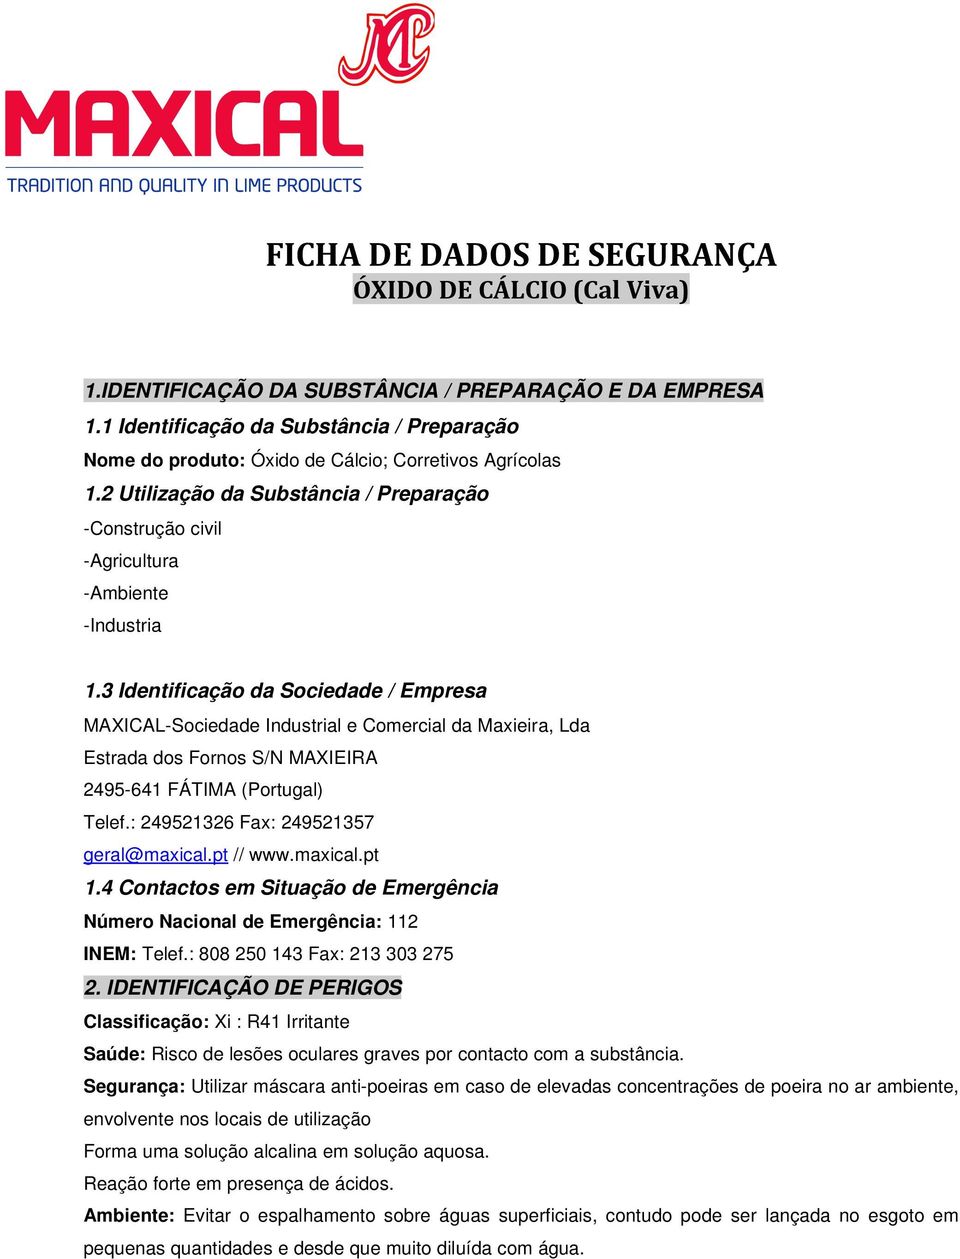 3 Identificação da Sociedade / Empresa MAXICAL-Sociedade Industrial e Comercial da Maxieira, Lda Estrada dos Fornos S/N MAXIEIRA 2495-641 FÁTIMA (Portugal) Telef.